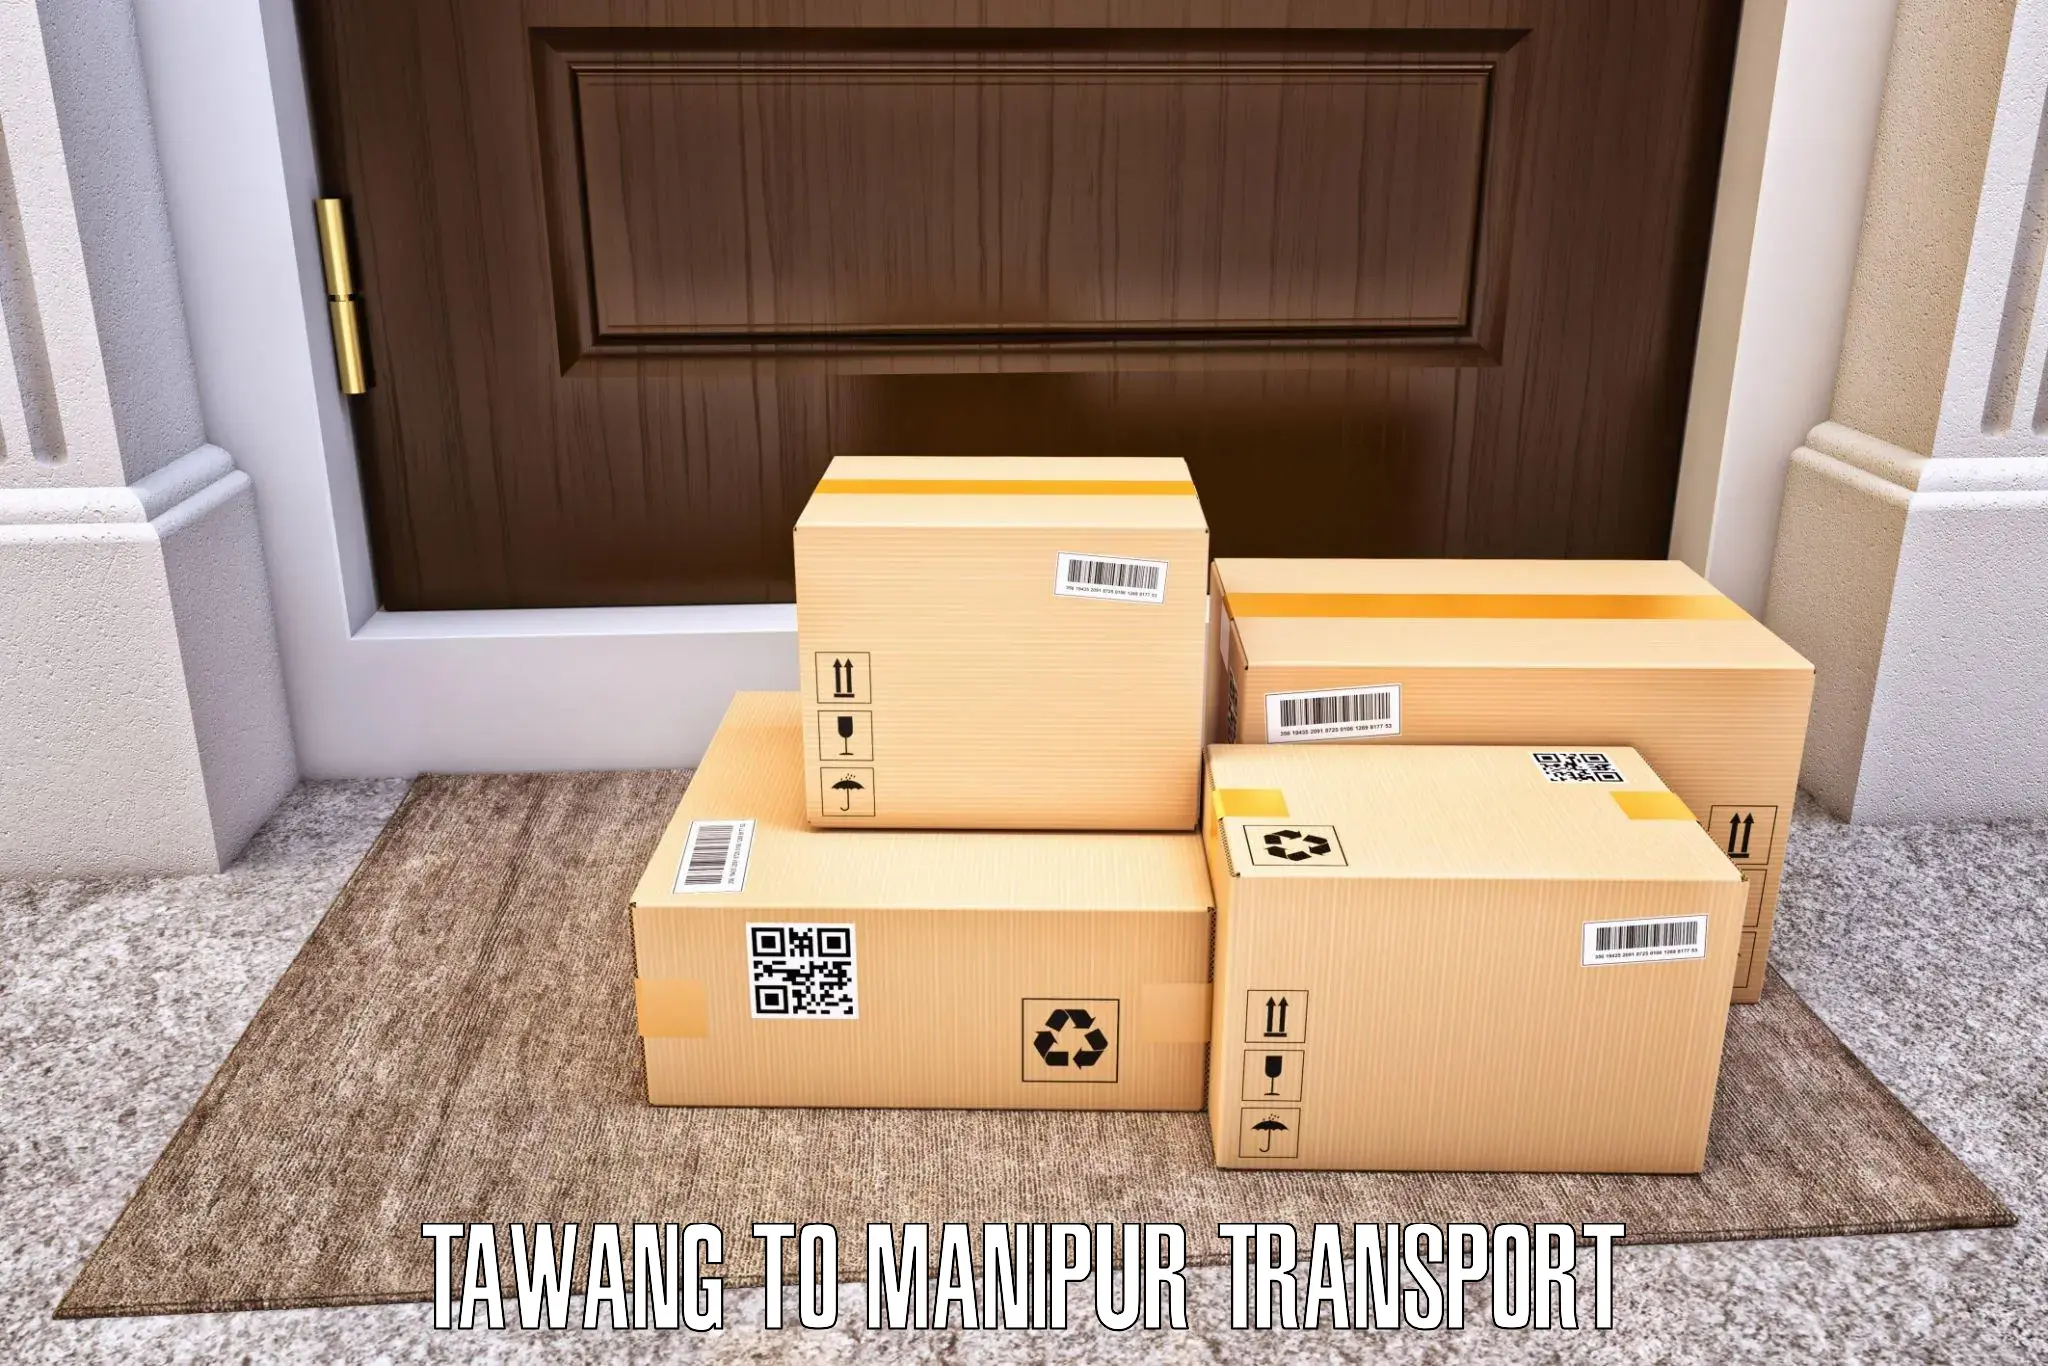 Daily parcel service transport Tawang to Senapati